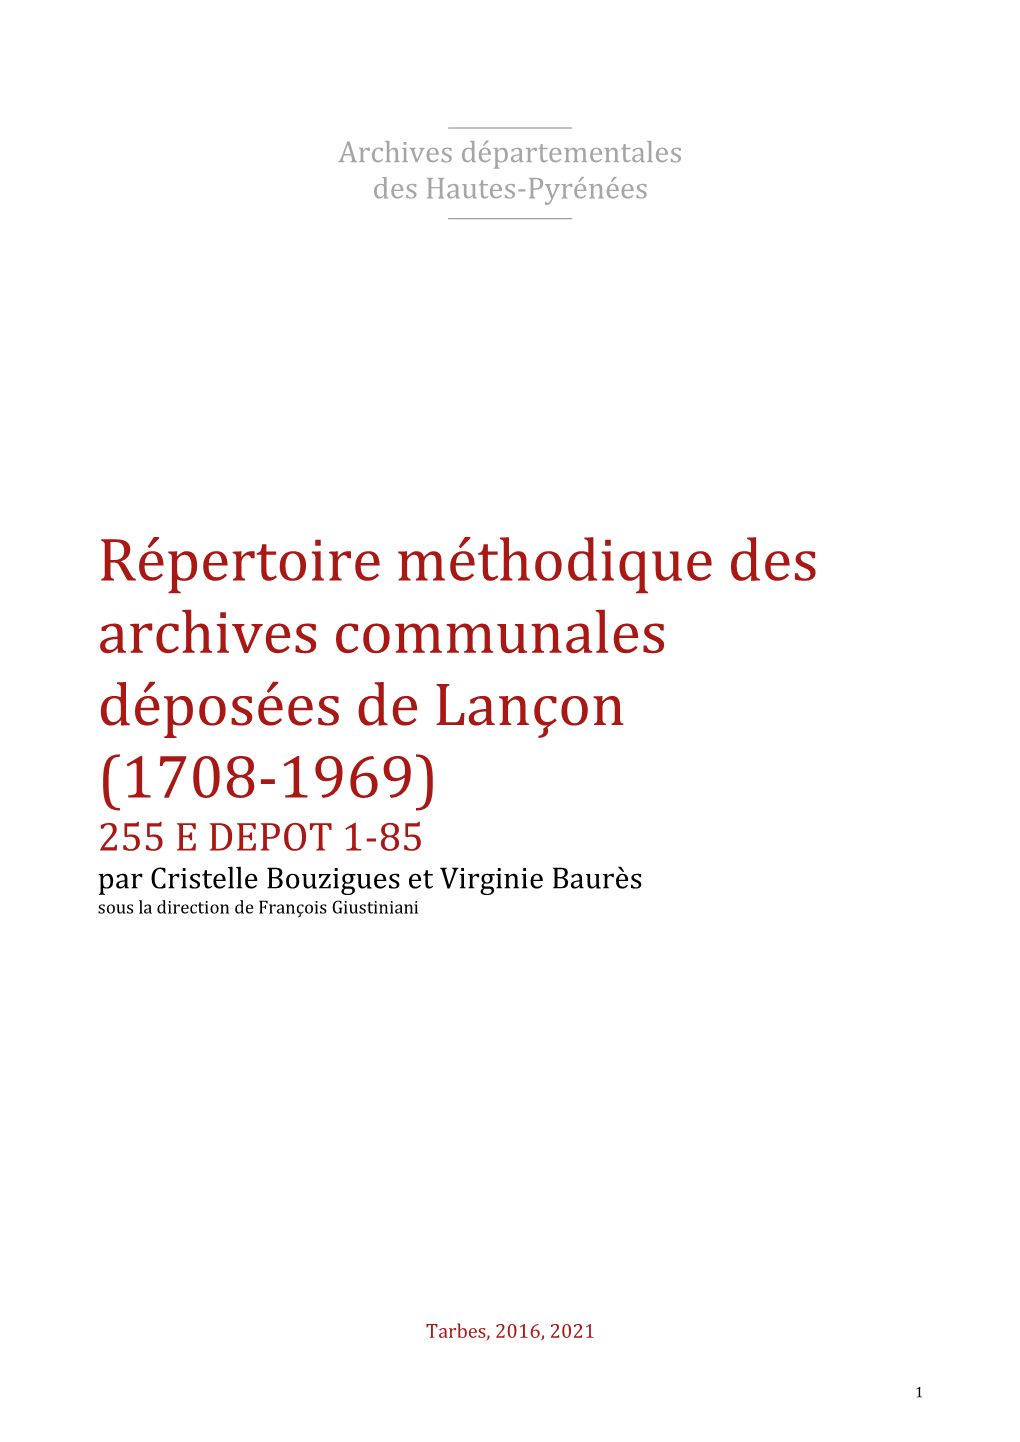 Répertoire Des Archives Déposées De Lançon